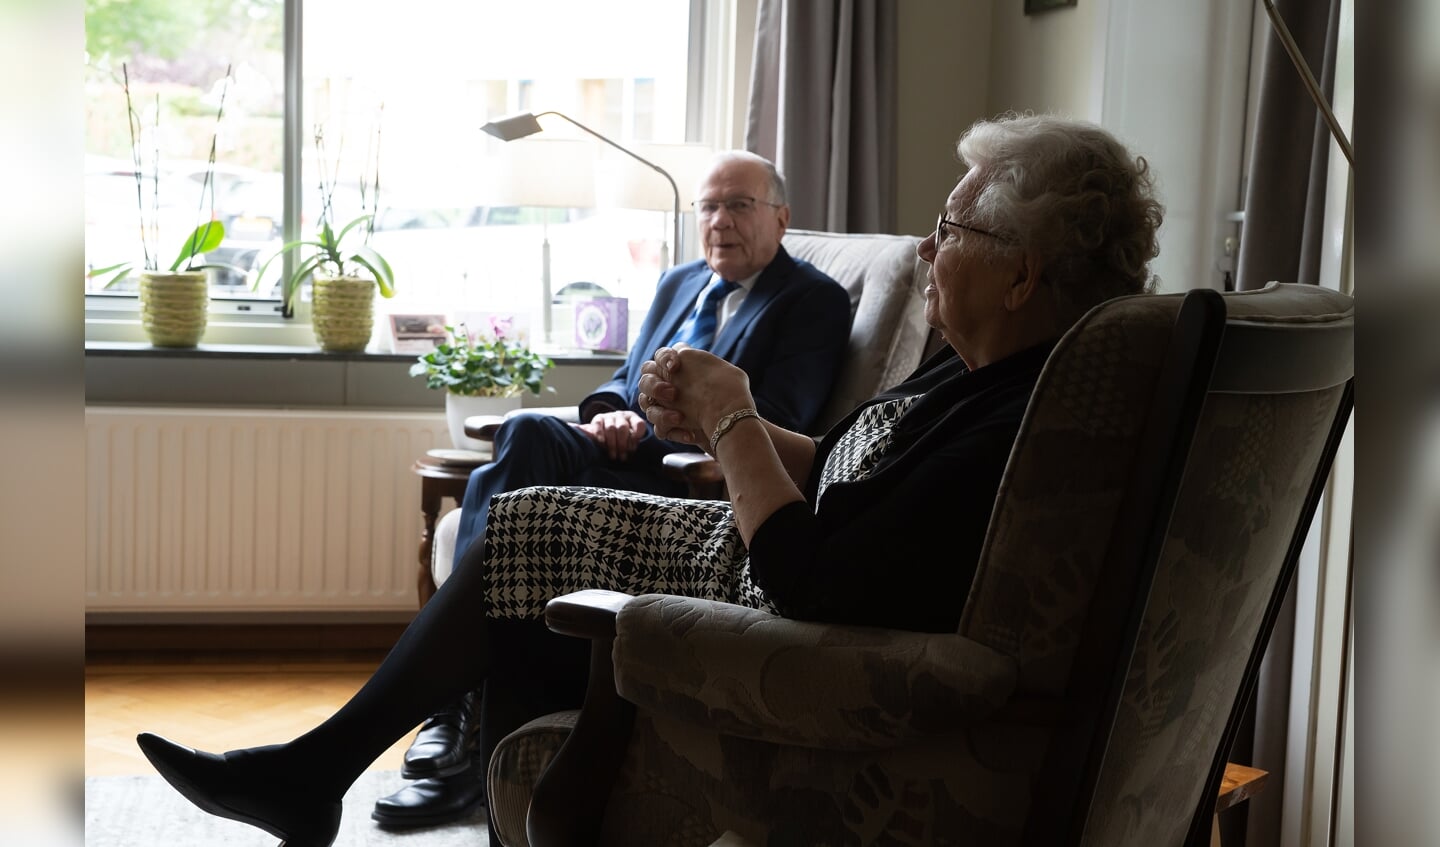 Echtpaar Van Oostenbrugge-van den Hoeven 60 jaar getrouwd